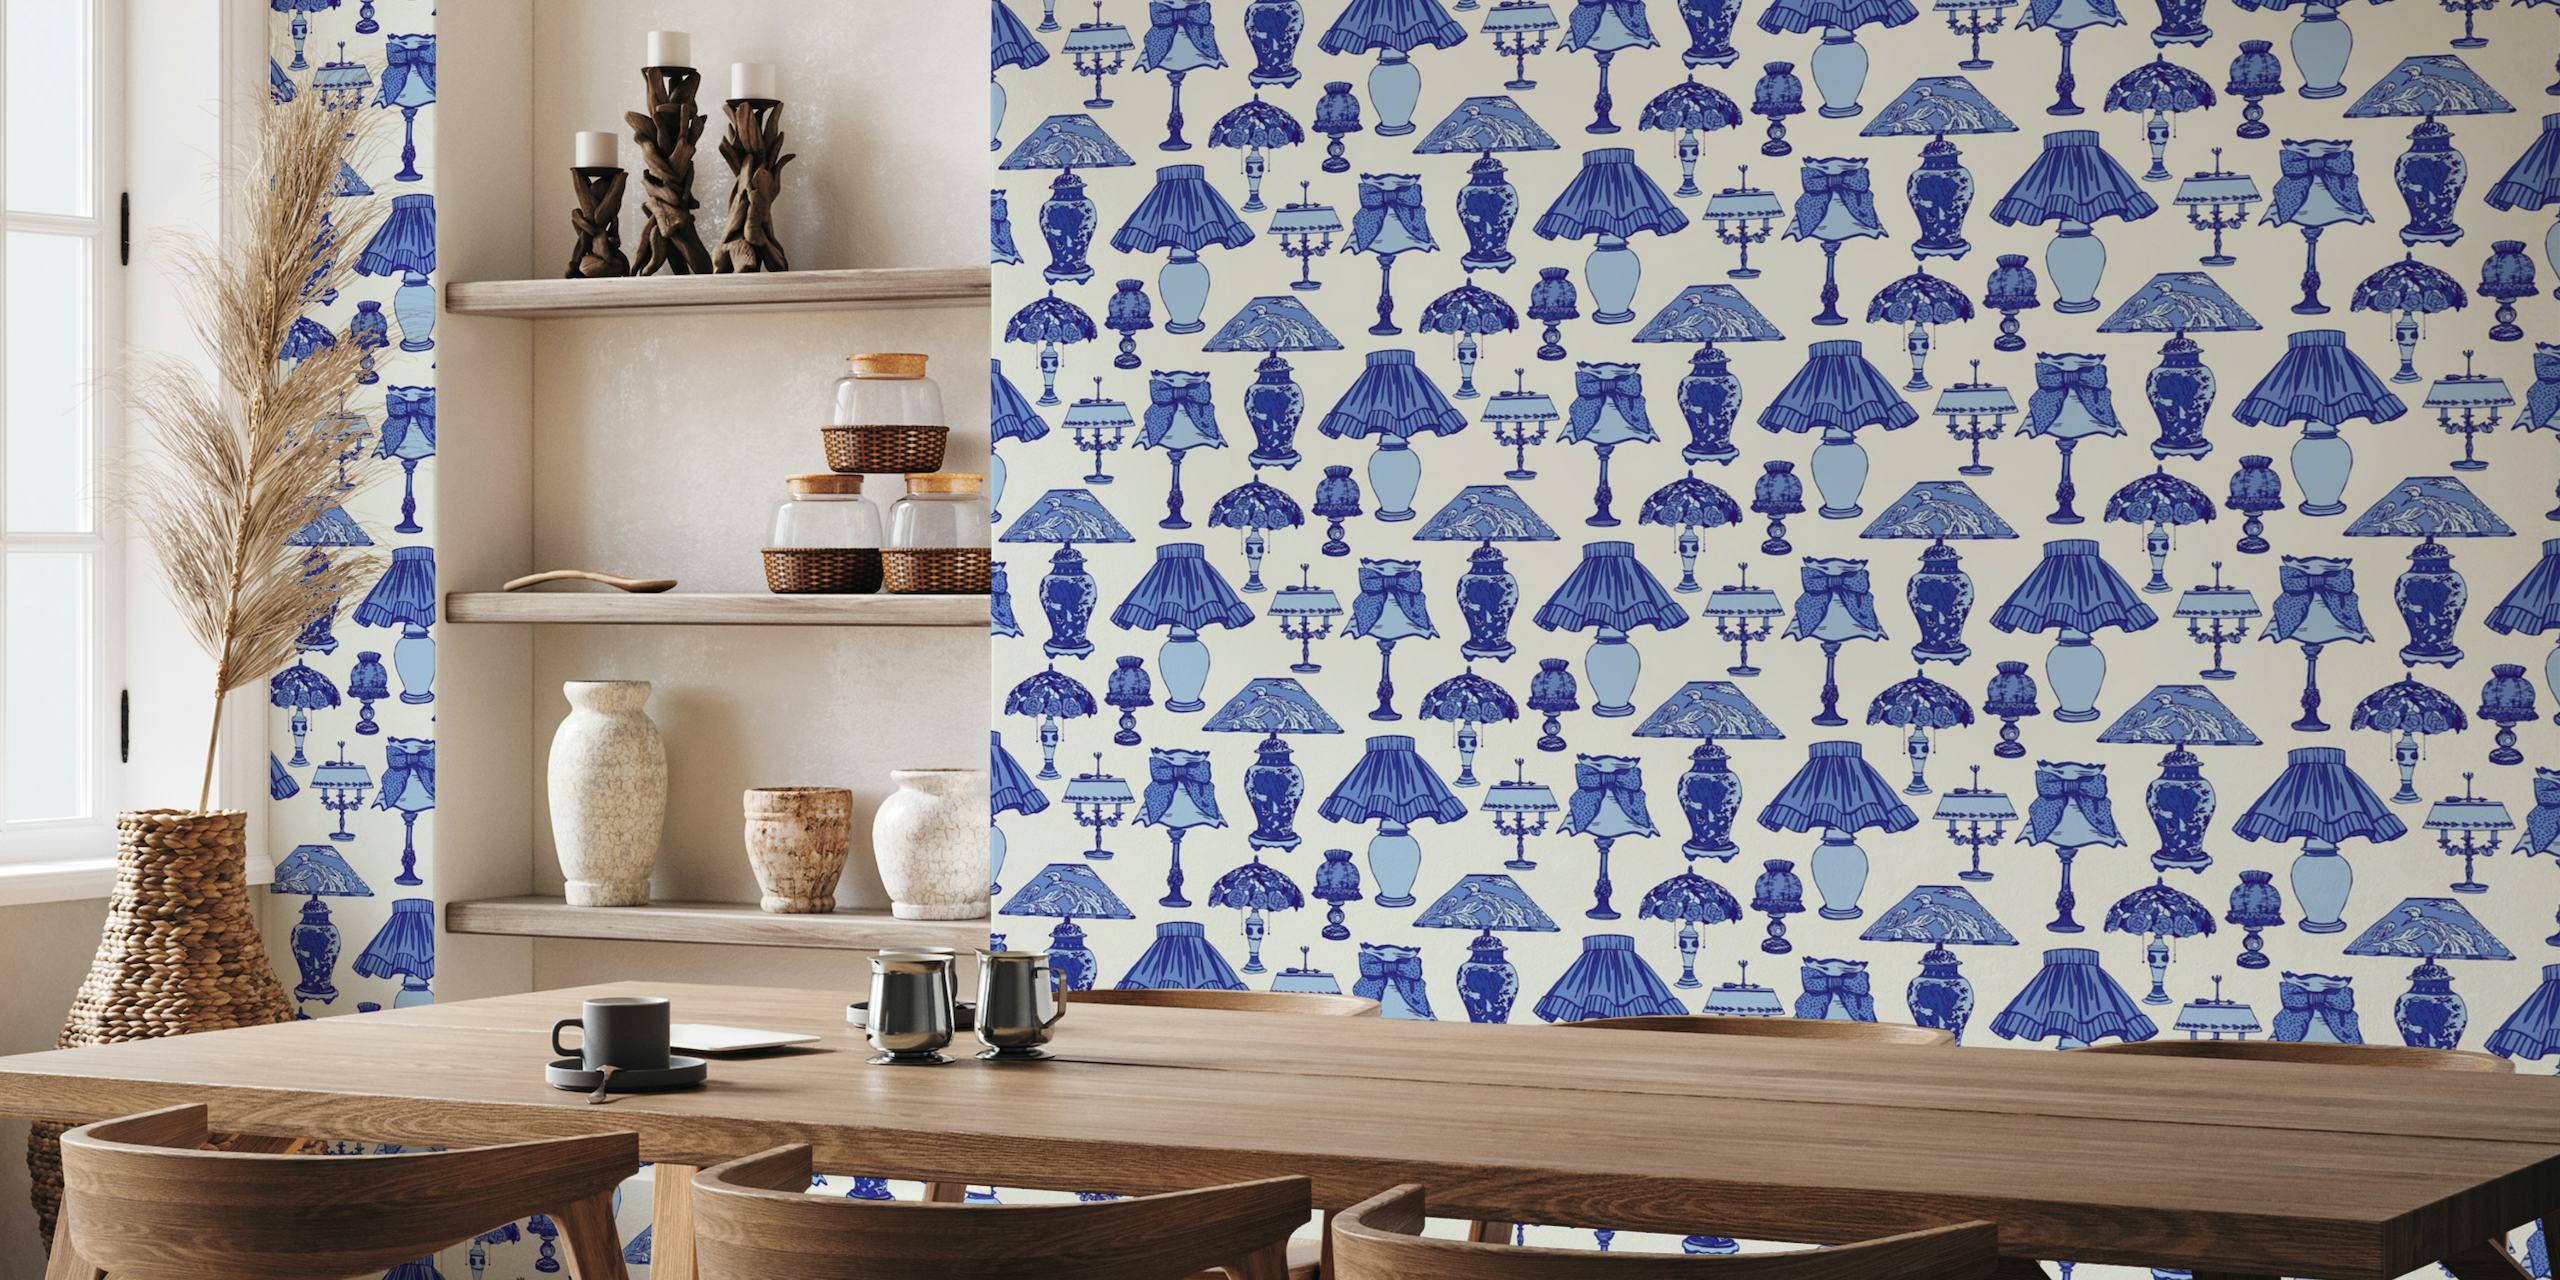 Decorazione murale con lampade ornamentali blu di Delft per l'arredamento della cucina